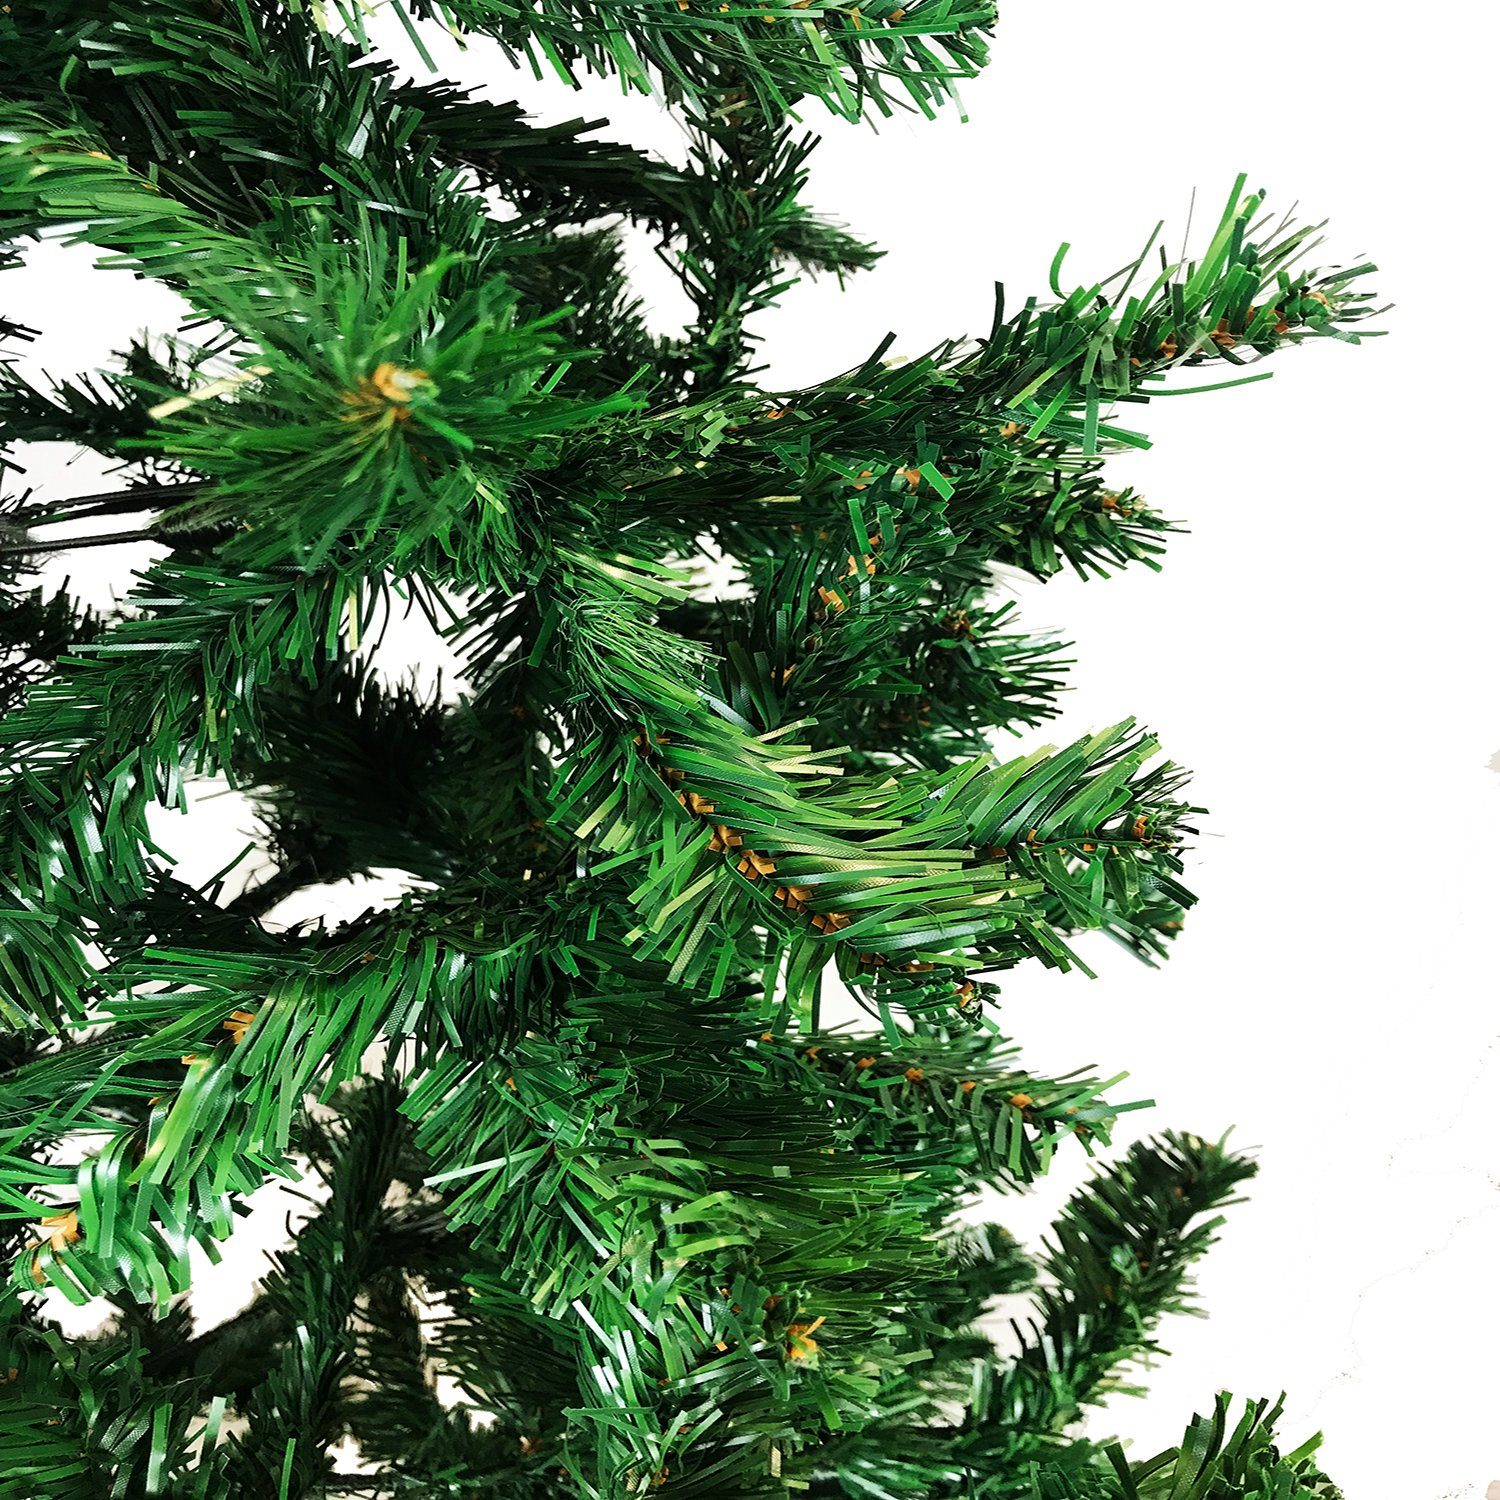 150 Ständer Weihnachtsbaum cm inkl Künstlicher grün Weihnachtsbaum Mojawo